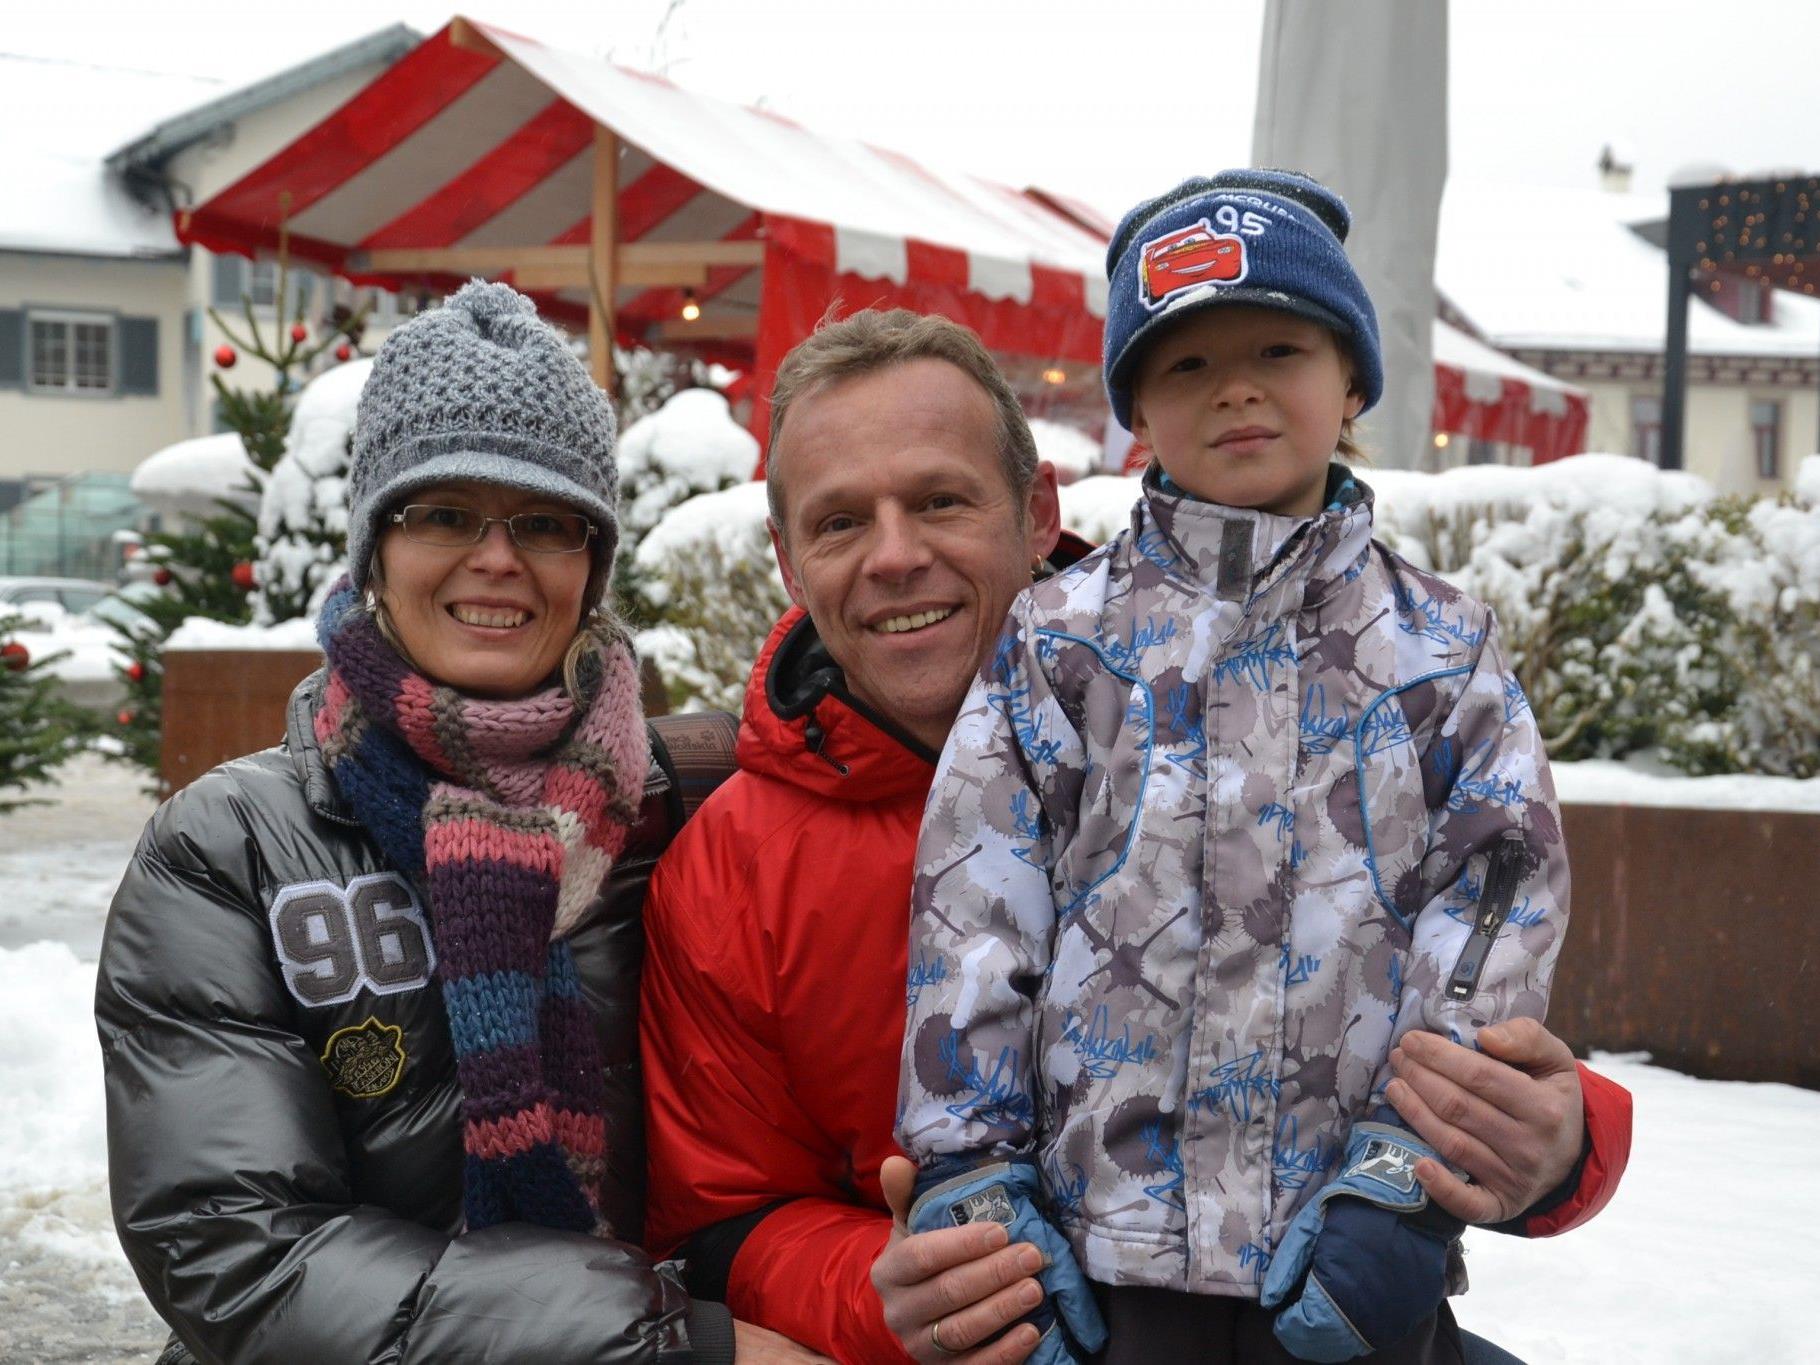 Auch Familie Jäger aus Götzis besuchte den Adventmarkt am Garnmarkt v.l.: Susanne & Dietmar mit Sandro